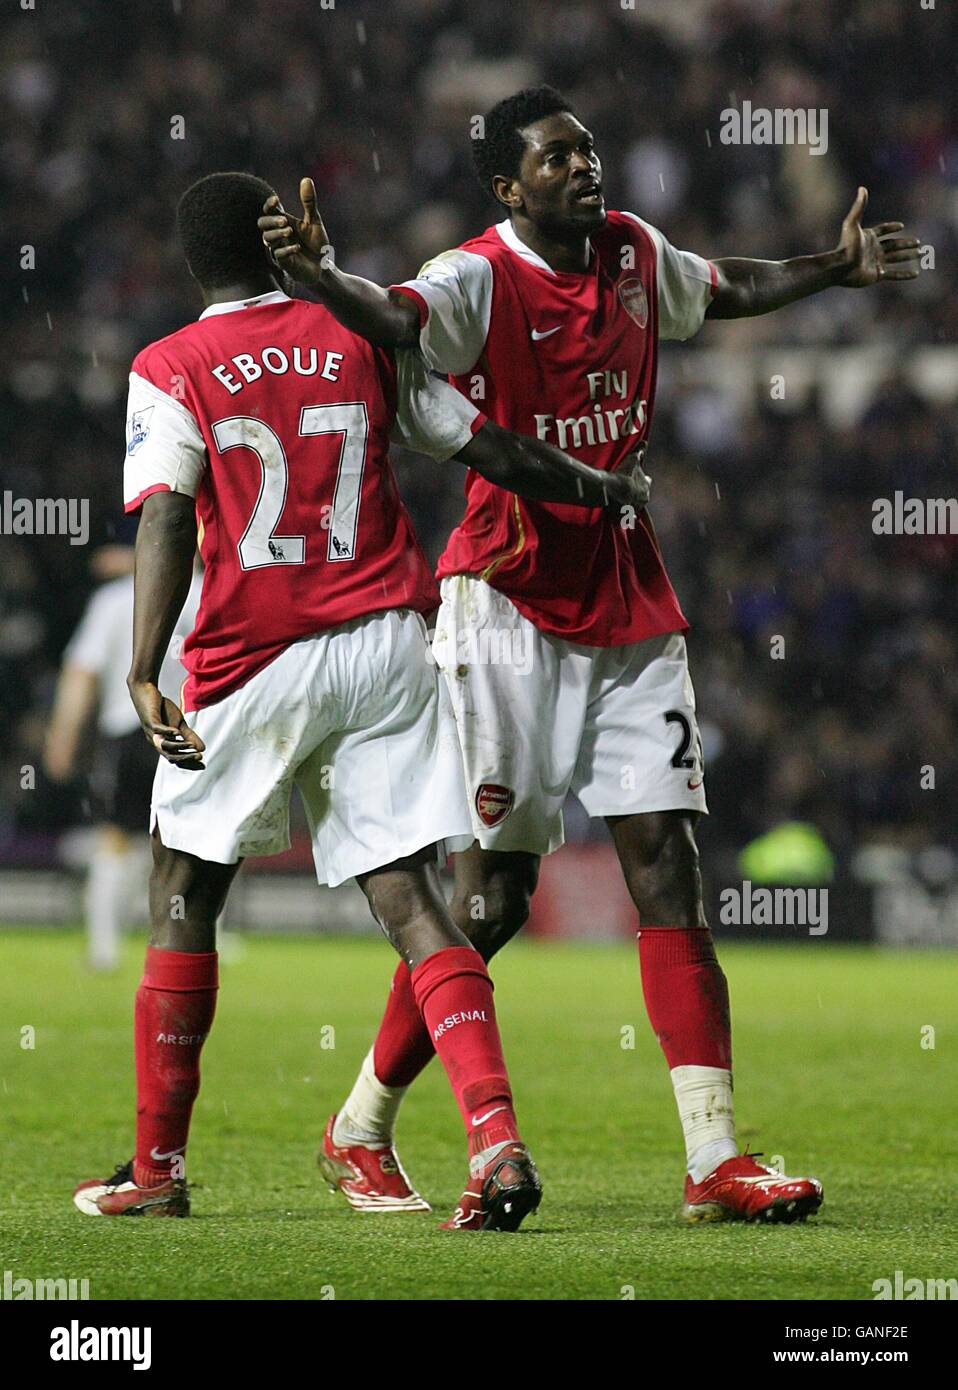 Fußball - Barclays Premier League - Derby County / Arsenal - Pride Park. Emmanuel Adebayor (rechts) feiert, nachdem er das achte Tor des Spiels erzielt und seinen Hattrick abgeschlossen hat. Stockfoto